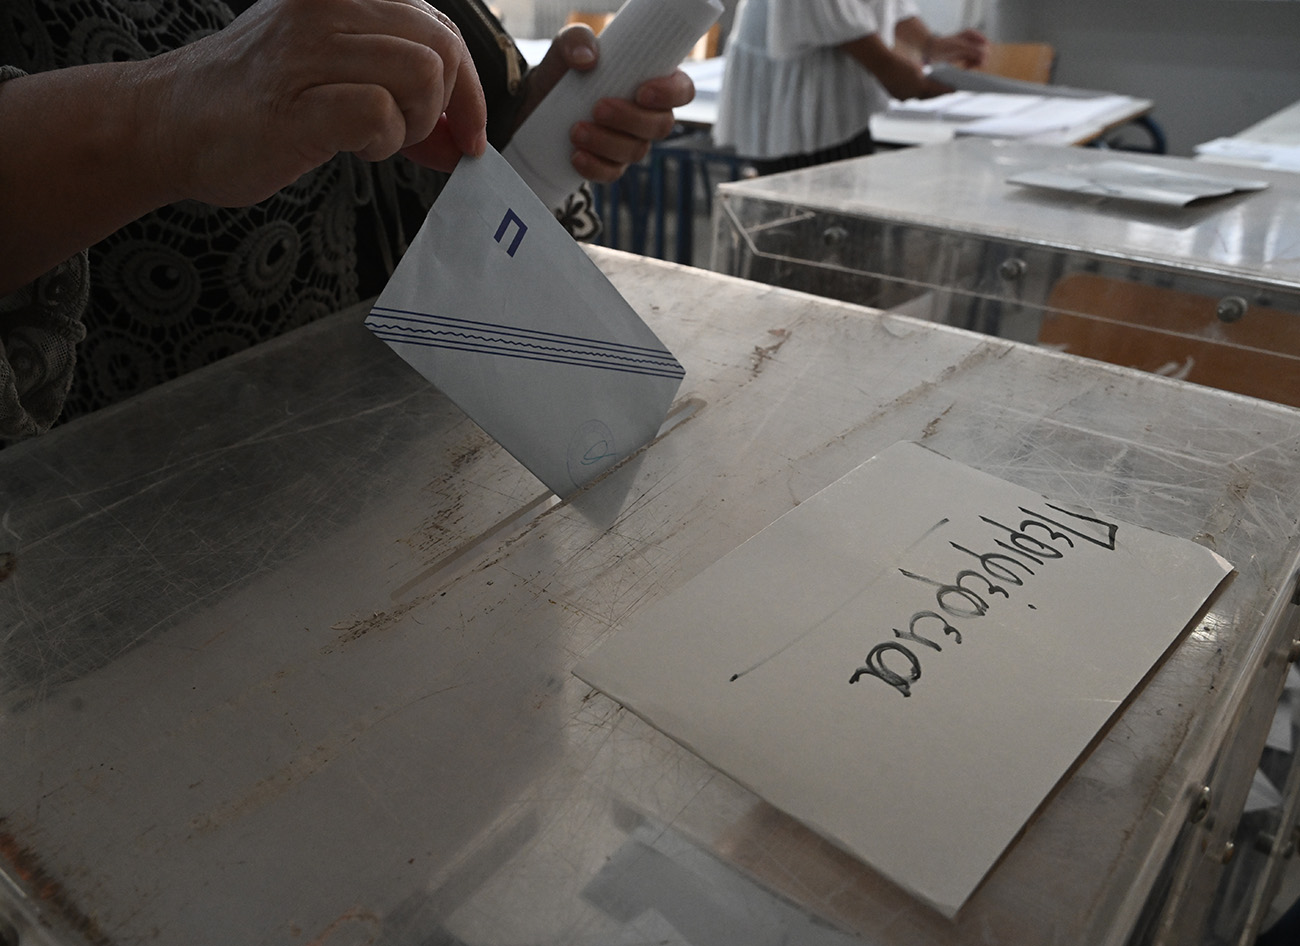 Περιφέρεια Στερεάς Ελλάδας – Περιφερειακές εκλογές 2023: Αποτελέσματα και σταυροί των περιφερειακών συμβούλων